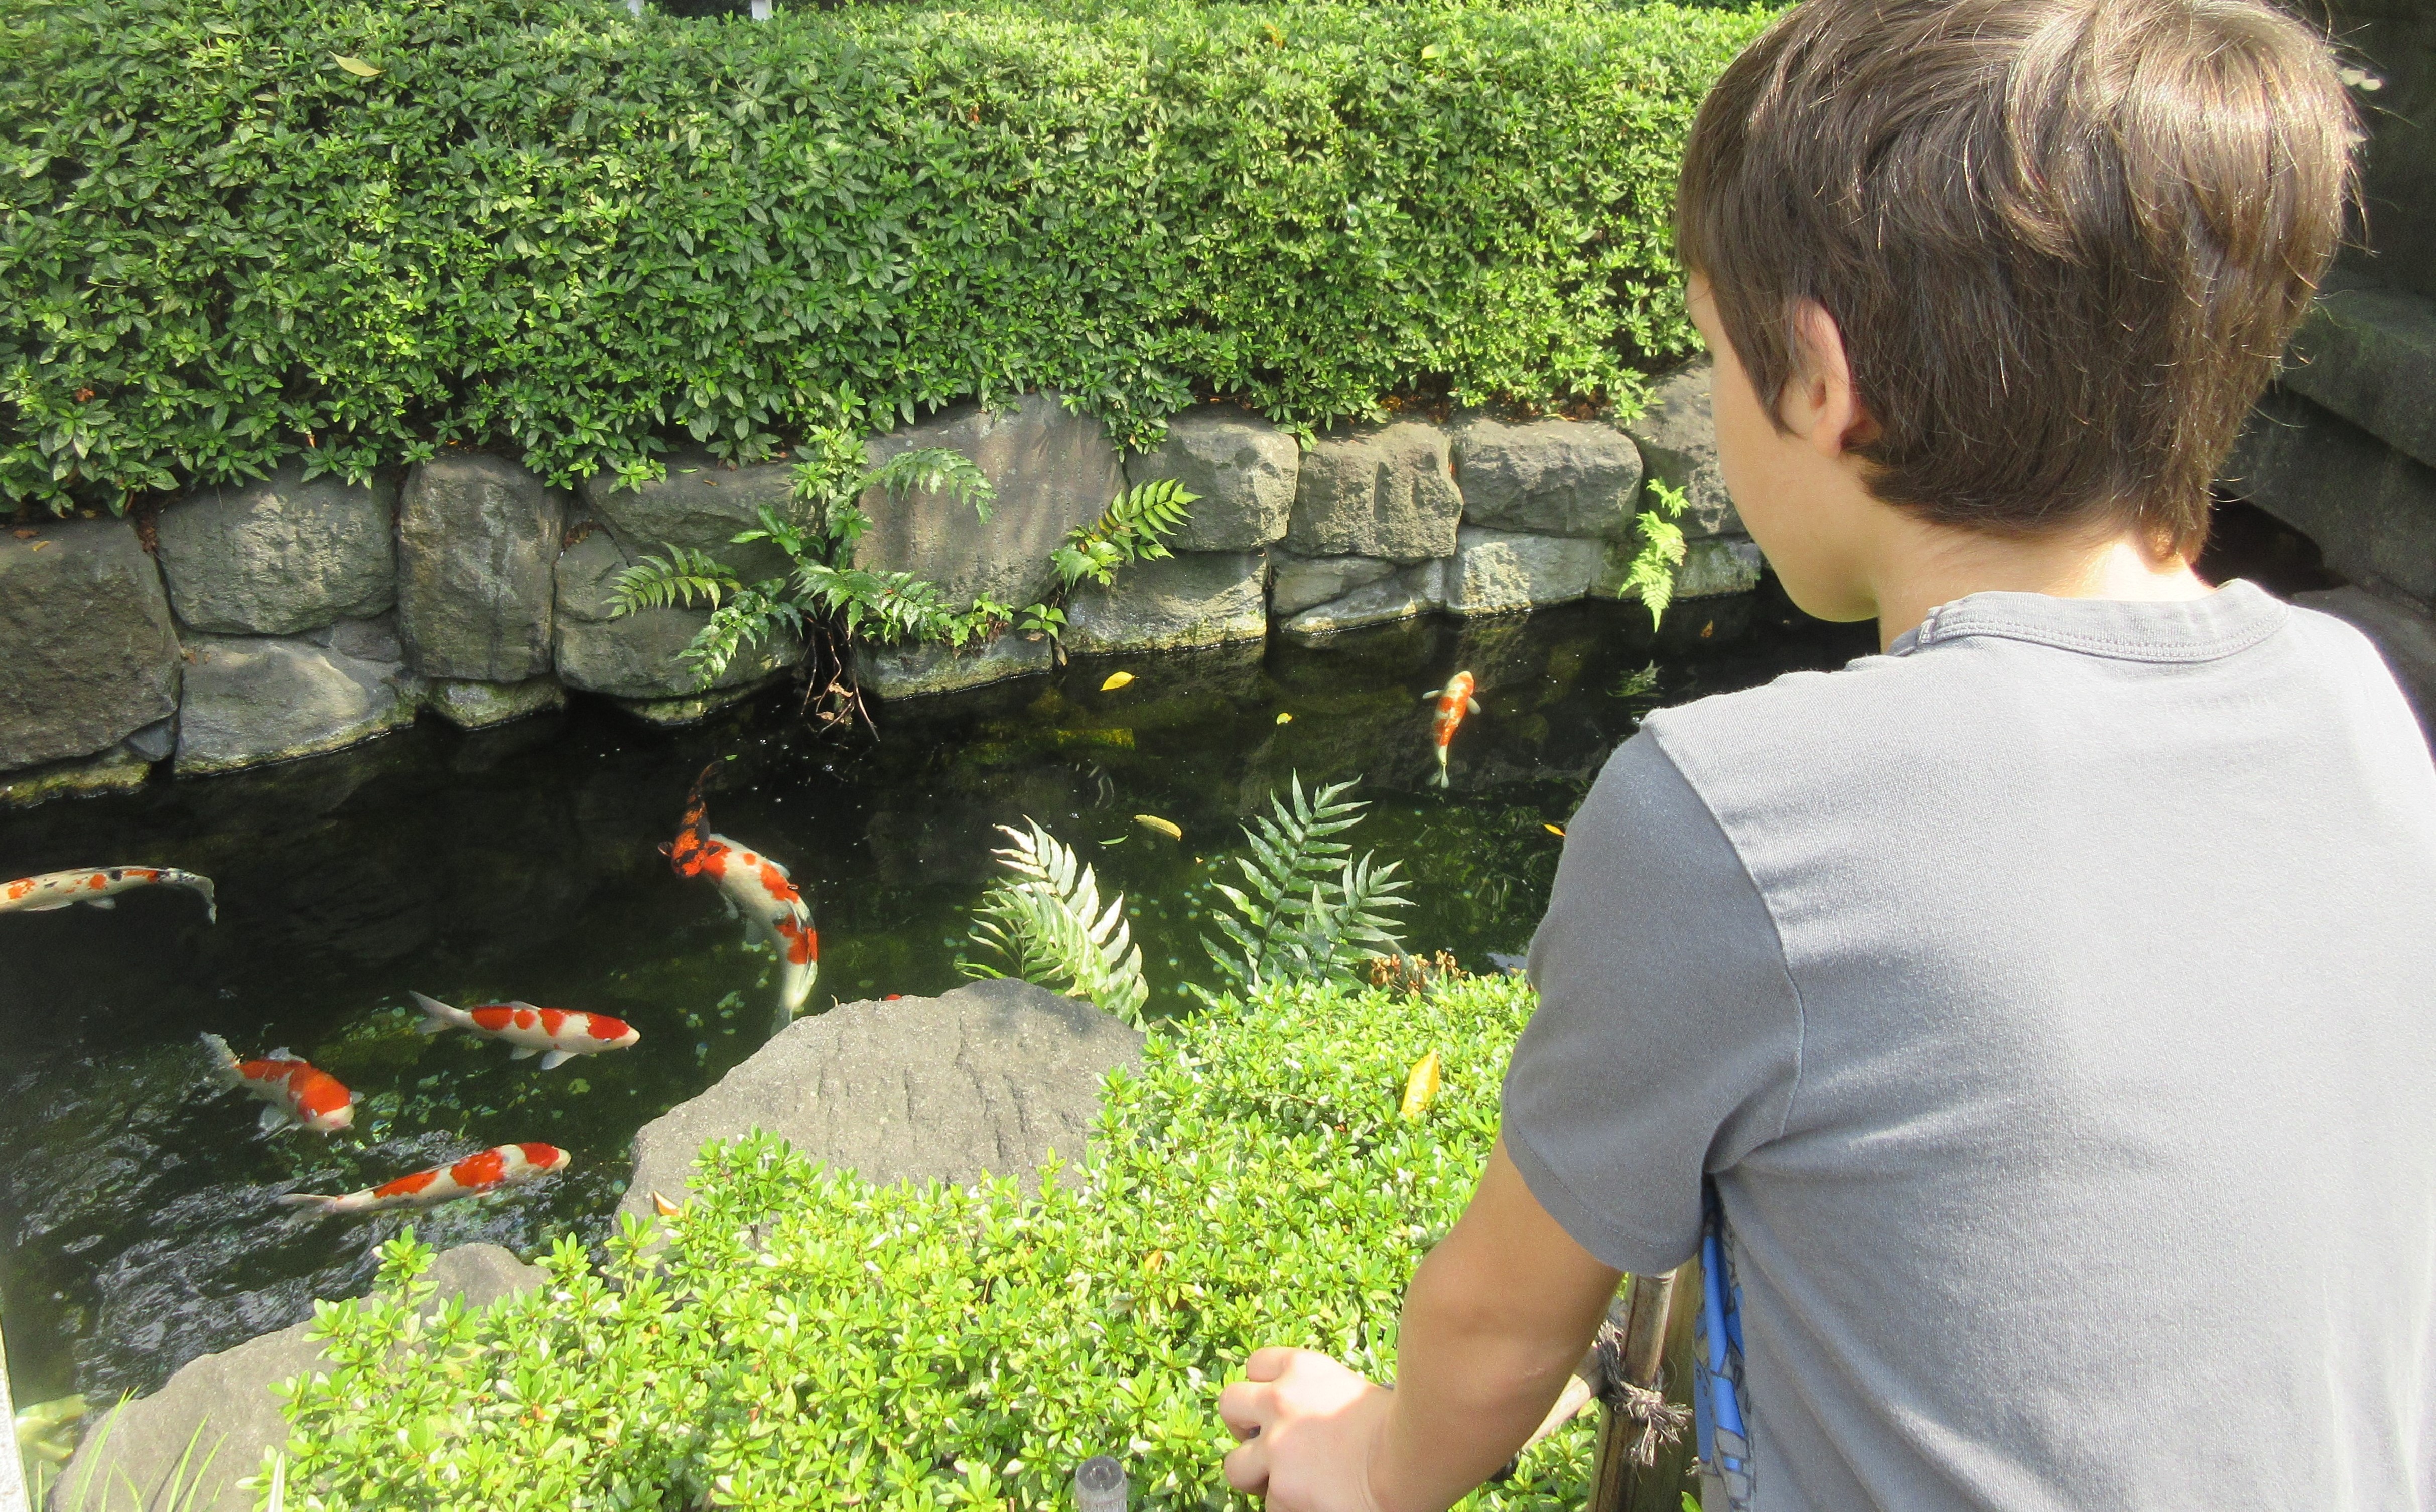 Un enfant observant un bassin de poissons.